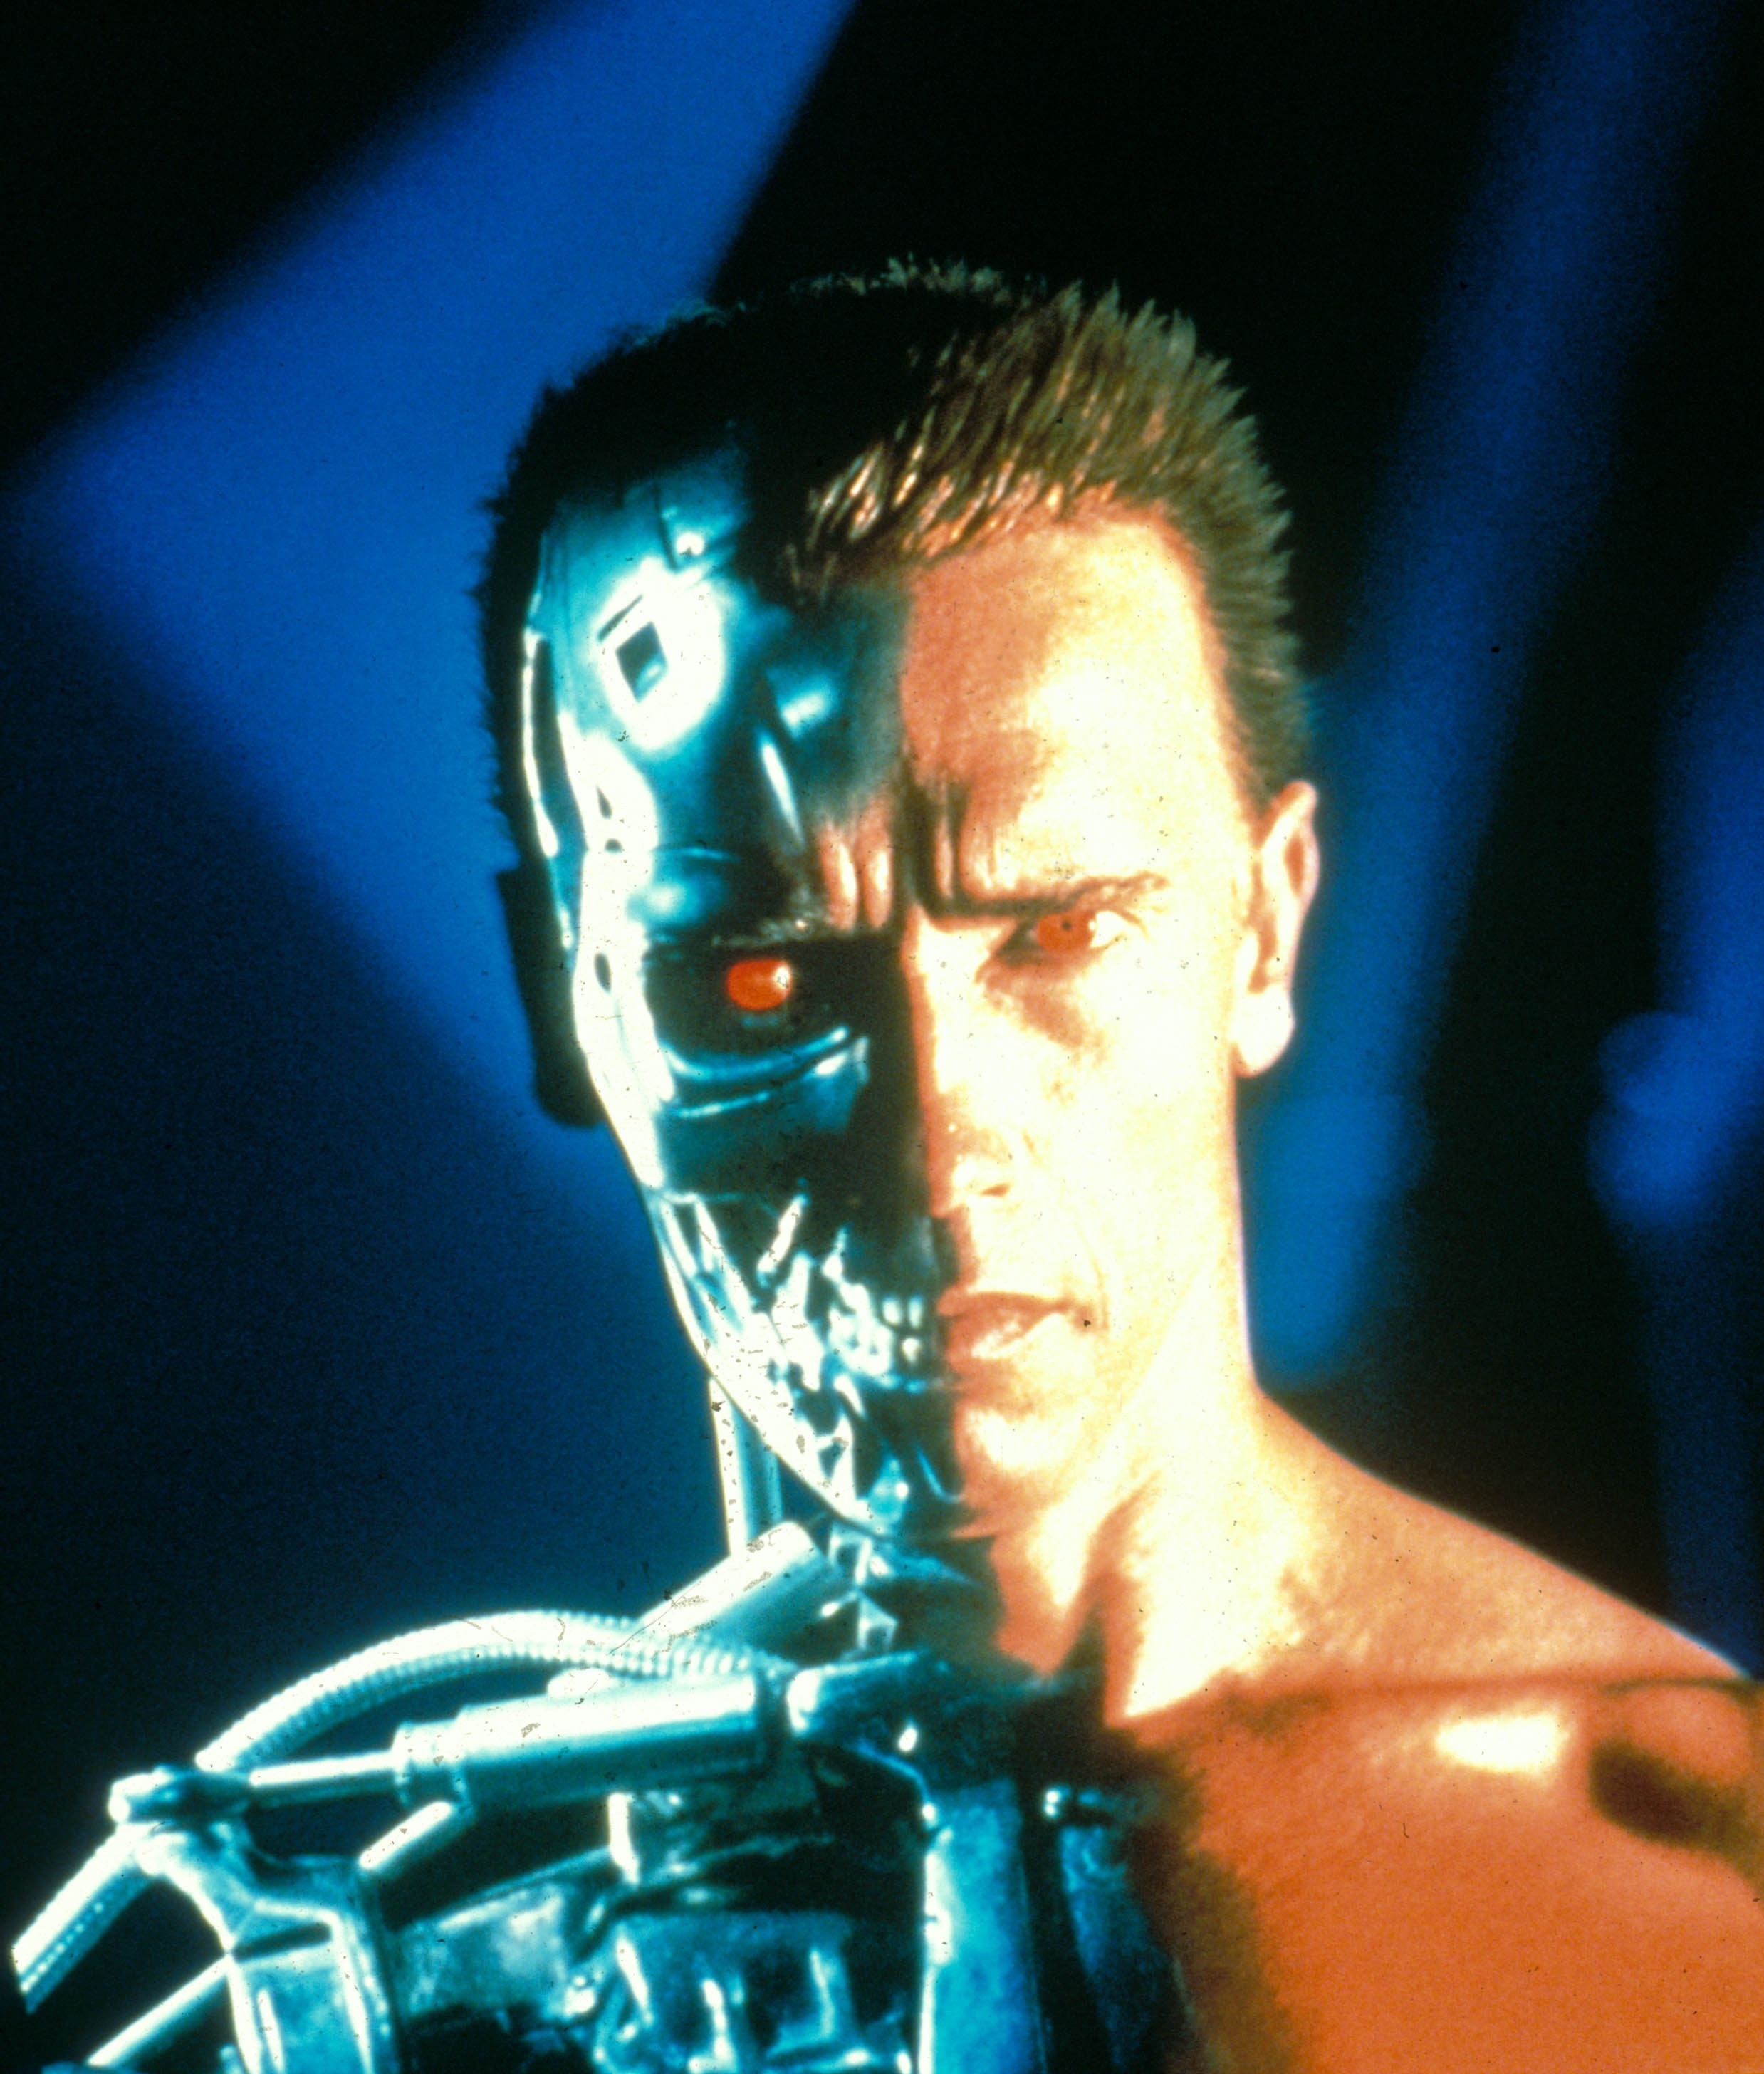 Der Terminator-Star gab diese Woche bekannt, dass er sich der Operation nach drei Herzoperationen unterzogen hatte